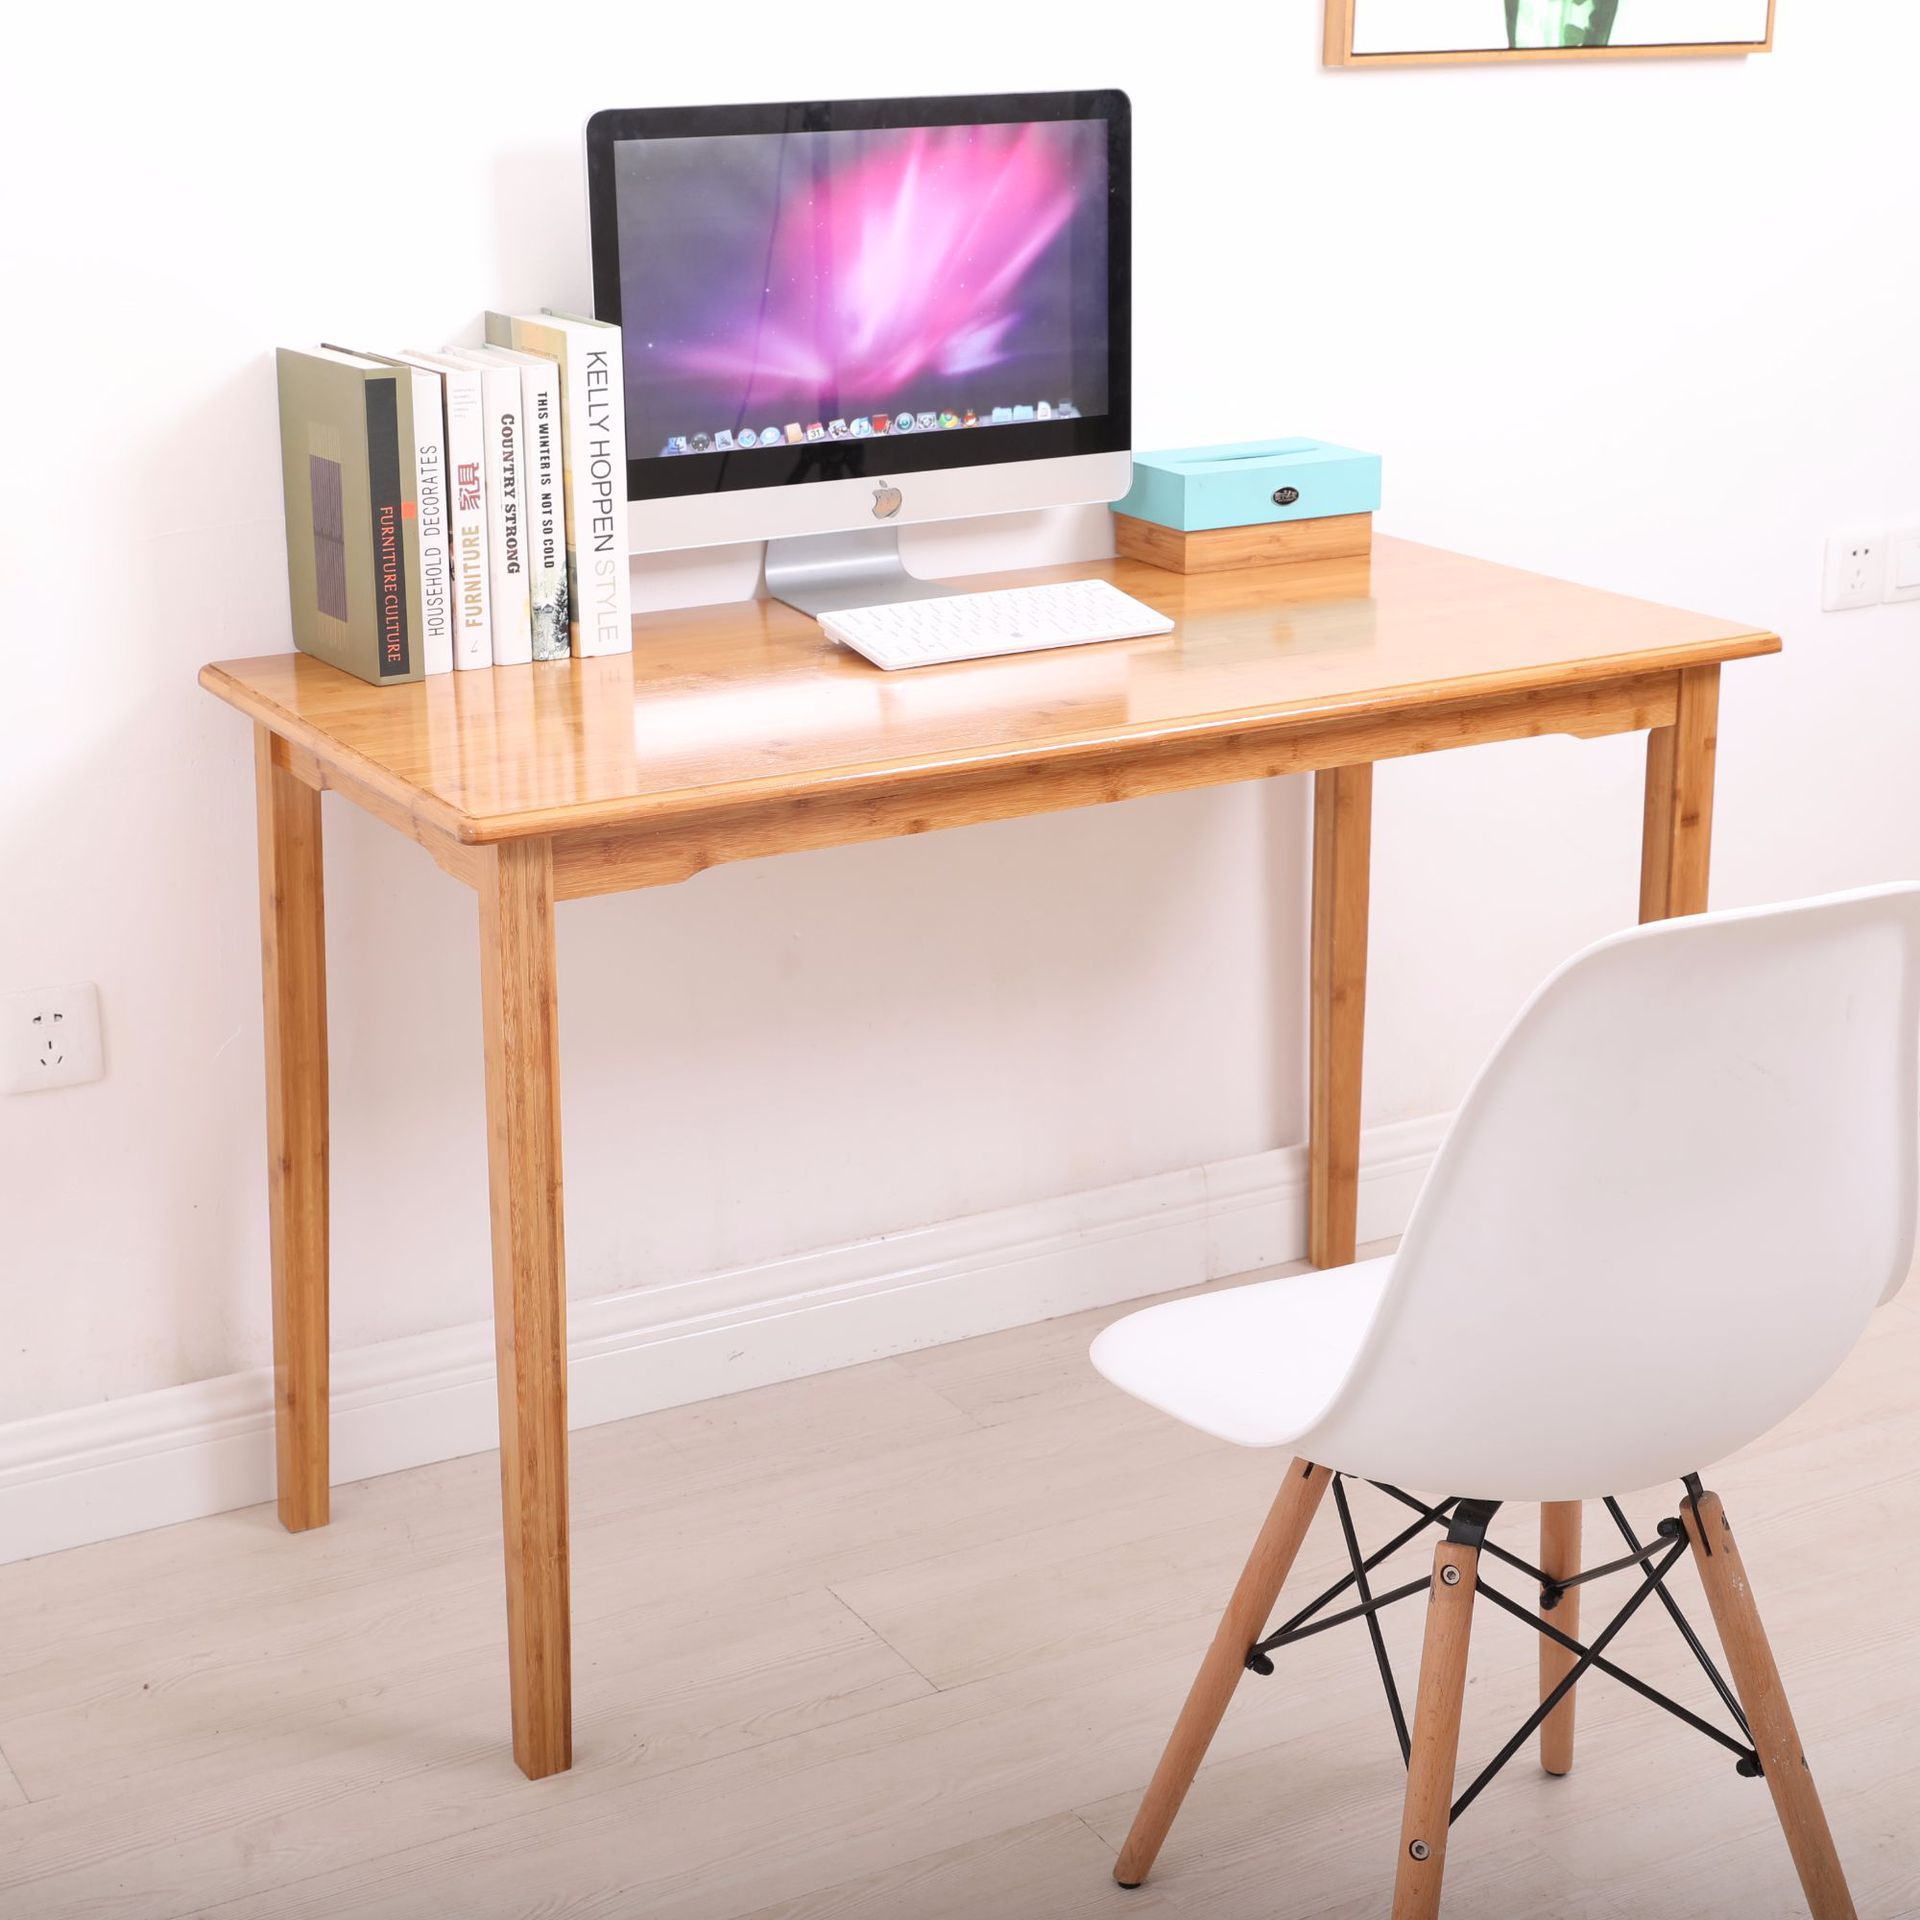 電腦桌 電腦臺 電腦桌臺式家用寫字臺實木小桌子簡約現代書桌簡易辦公桌子